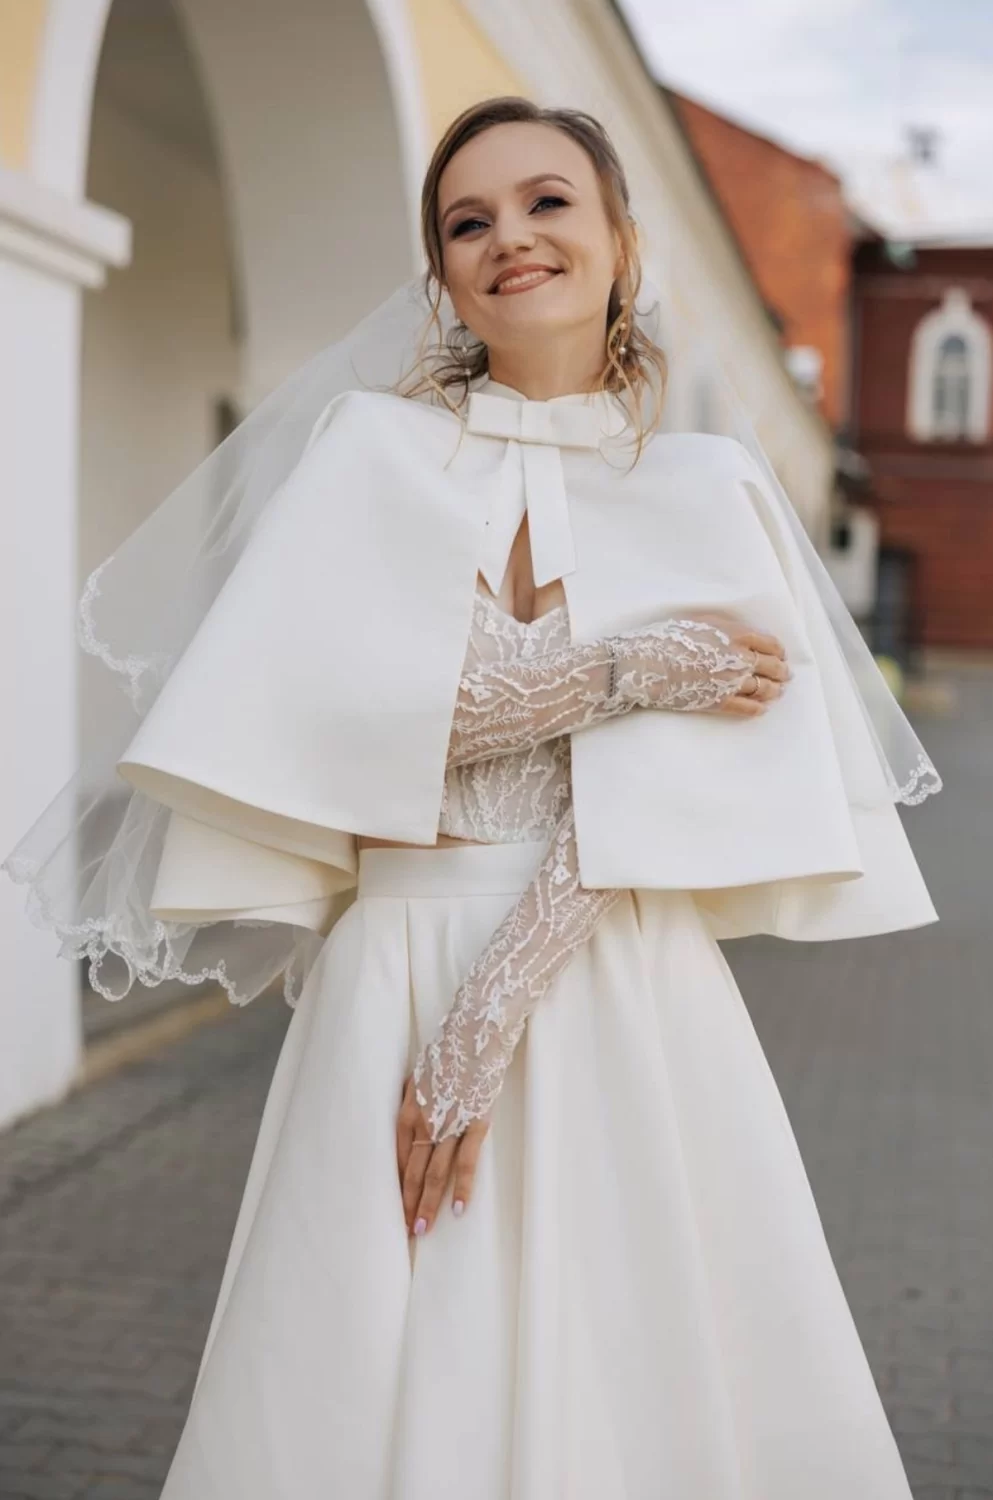 Kamilana-couture свадебные платья.png